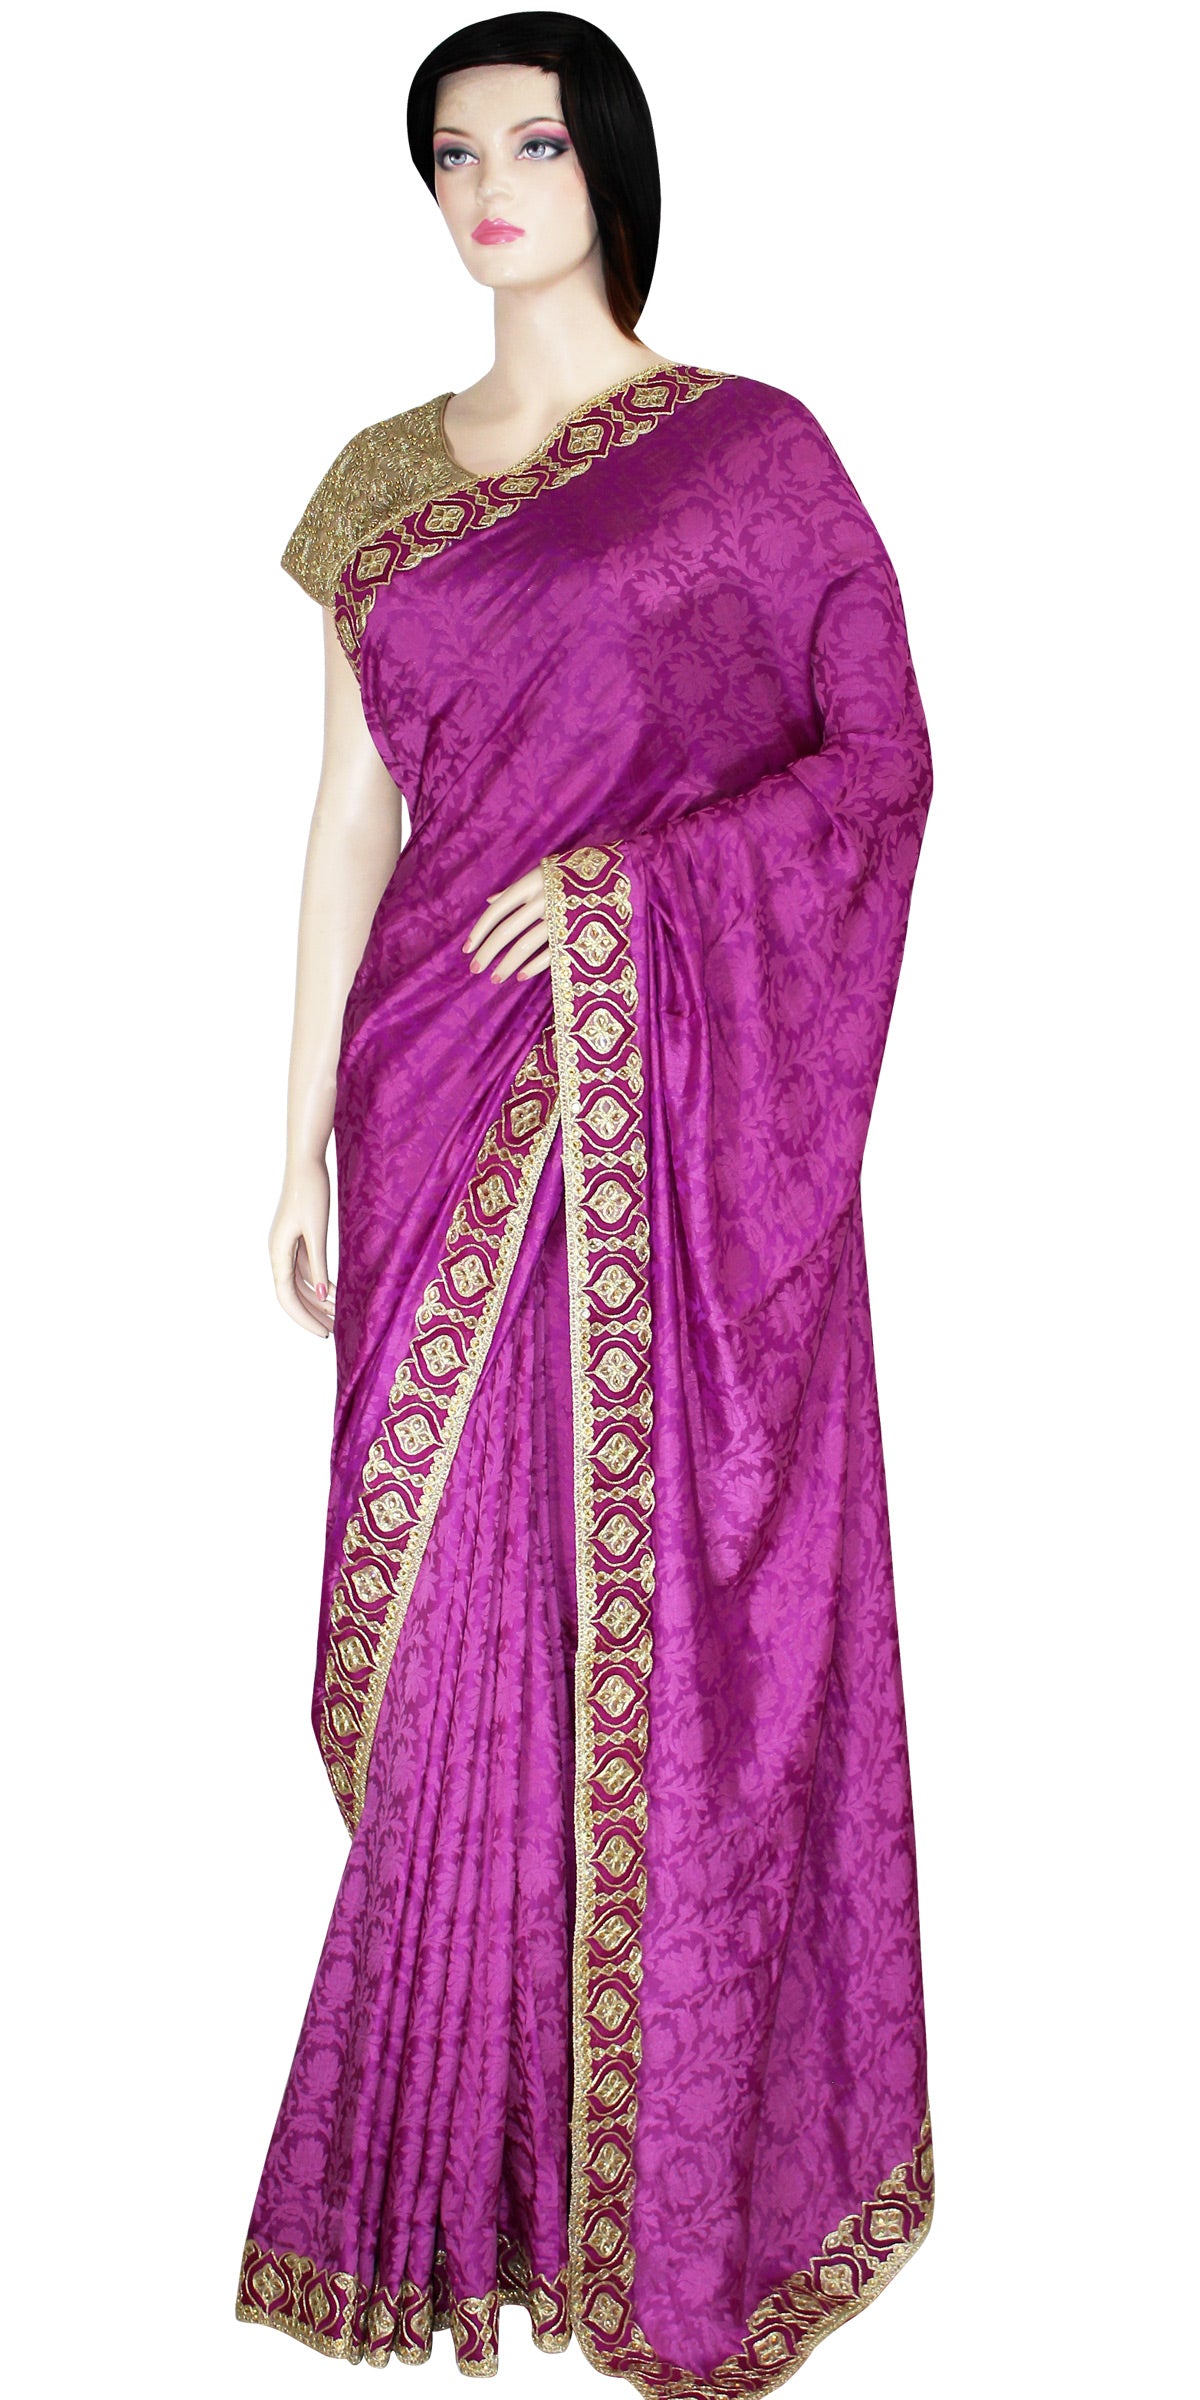 Dark Pink Indian Ethnic wear Saree, Indian Pooja dress, Magenta Banarasi Saree, Voilet Silk Saree, Traditional Indian Saree in USA, Bollywood style saree, Partywear Saree, Pooja Dress, Pooja Saree, Festival Wear